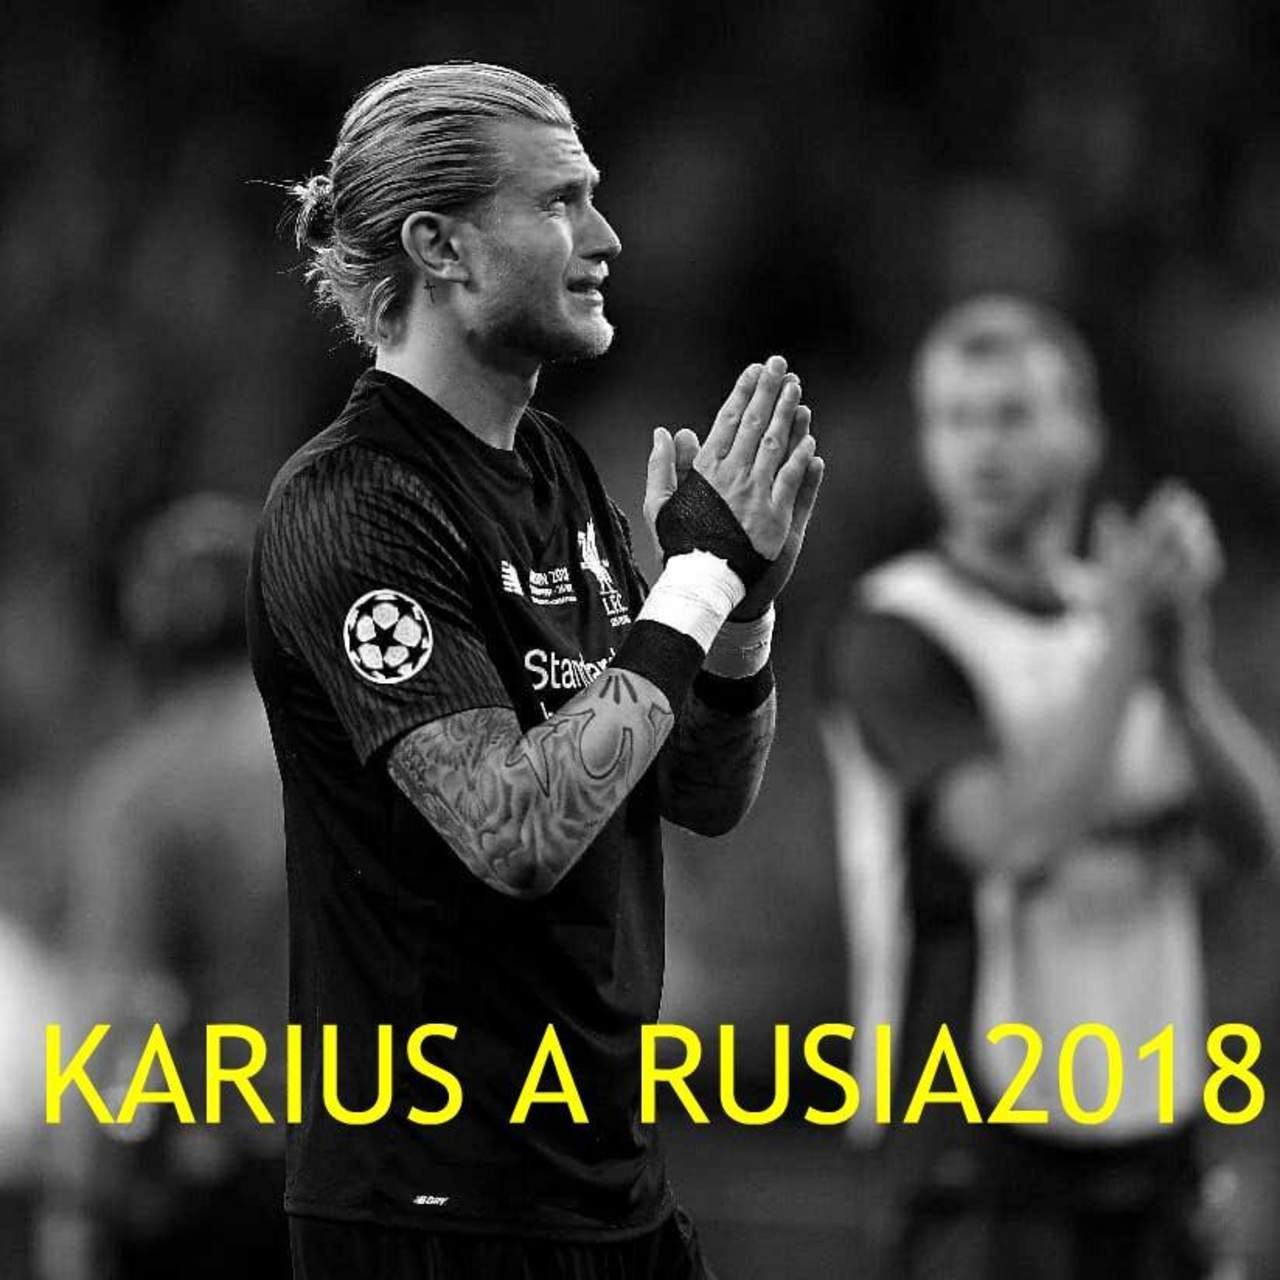 Piden en redes 'cadena de oración' para que Karius sea el guardameta de Alemania en el mundial